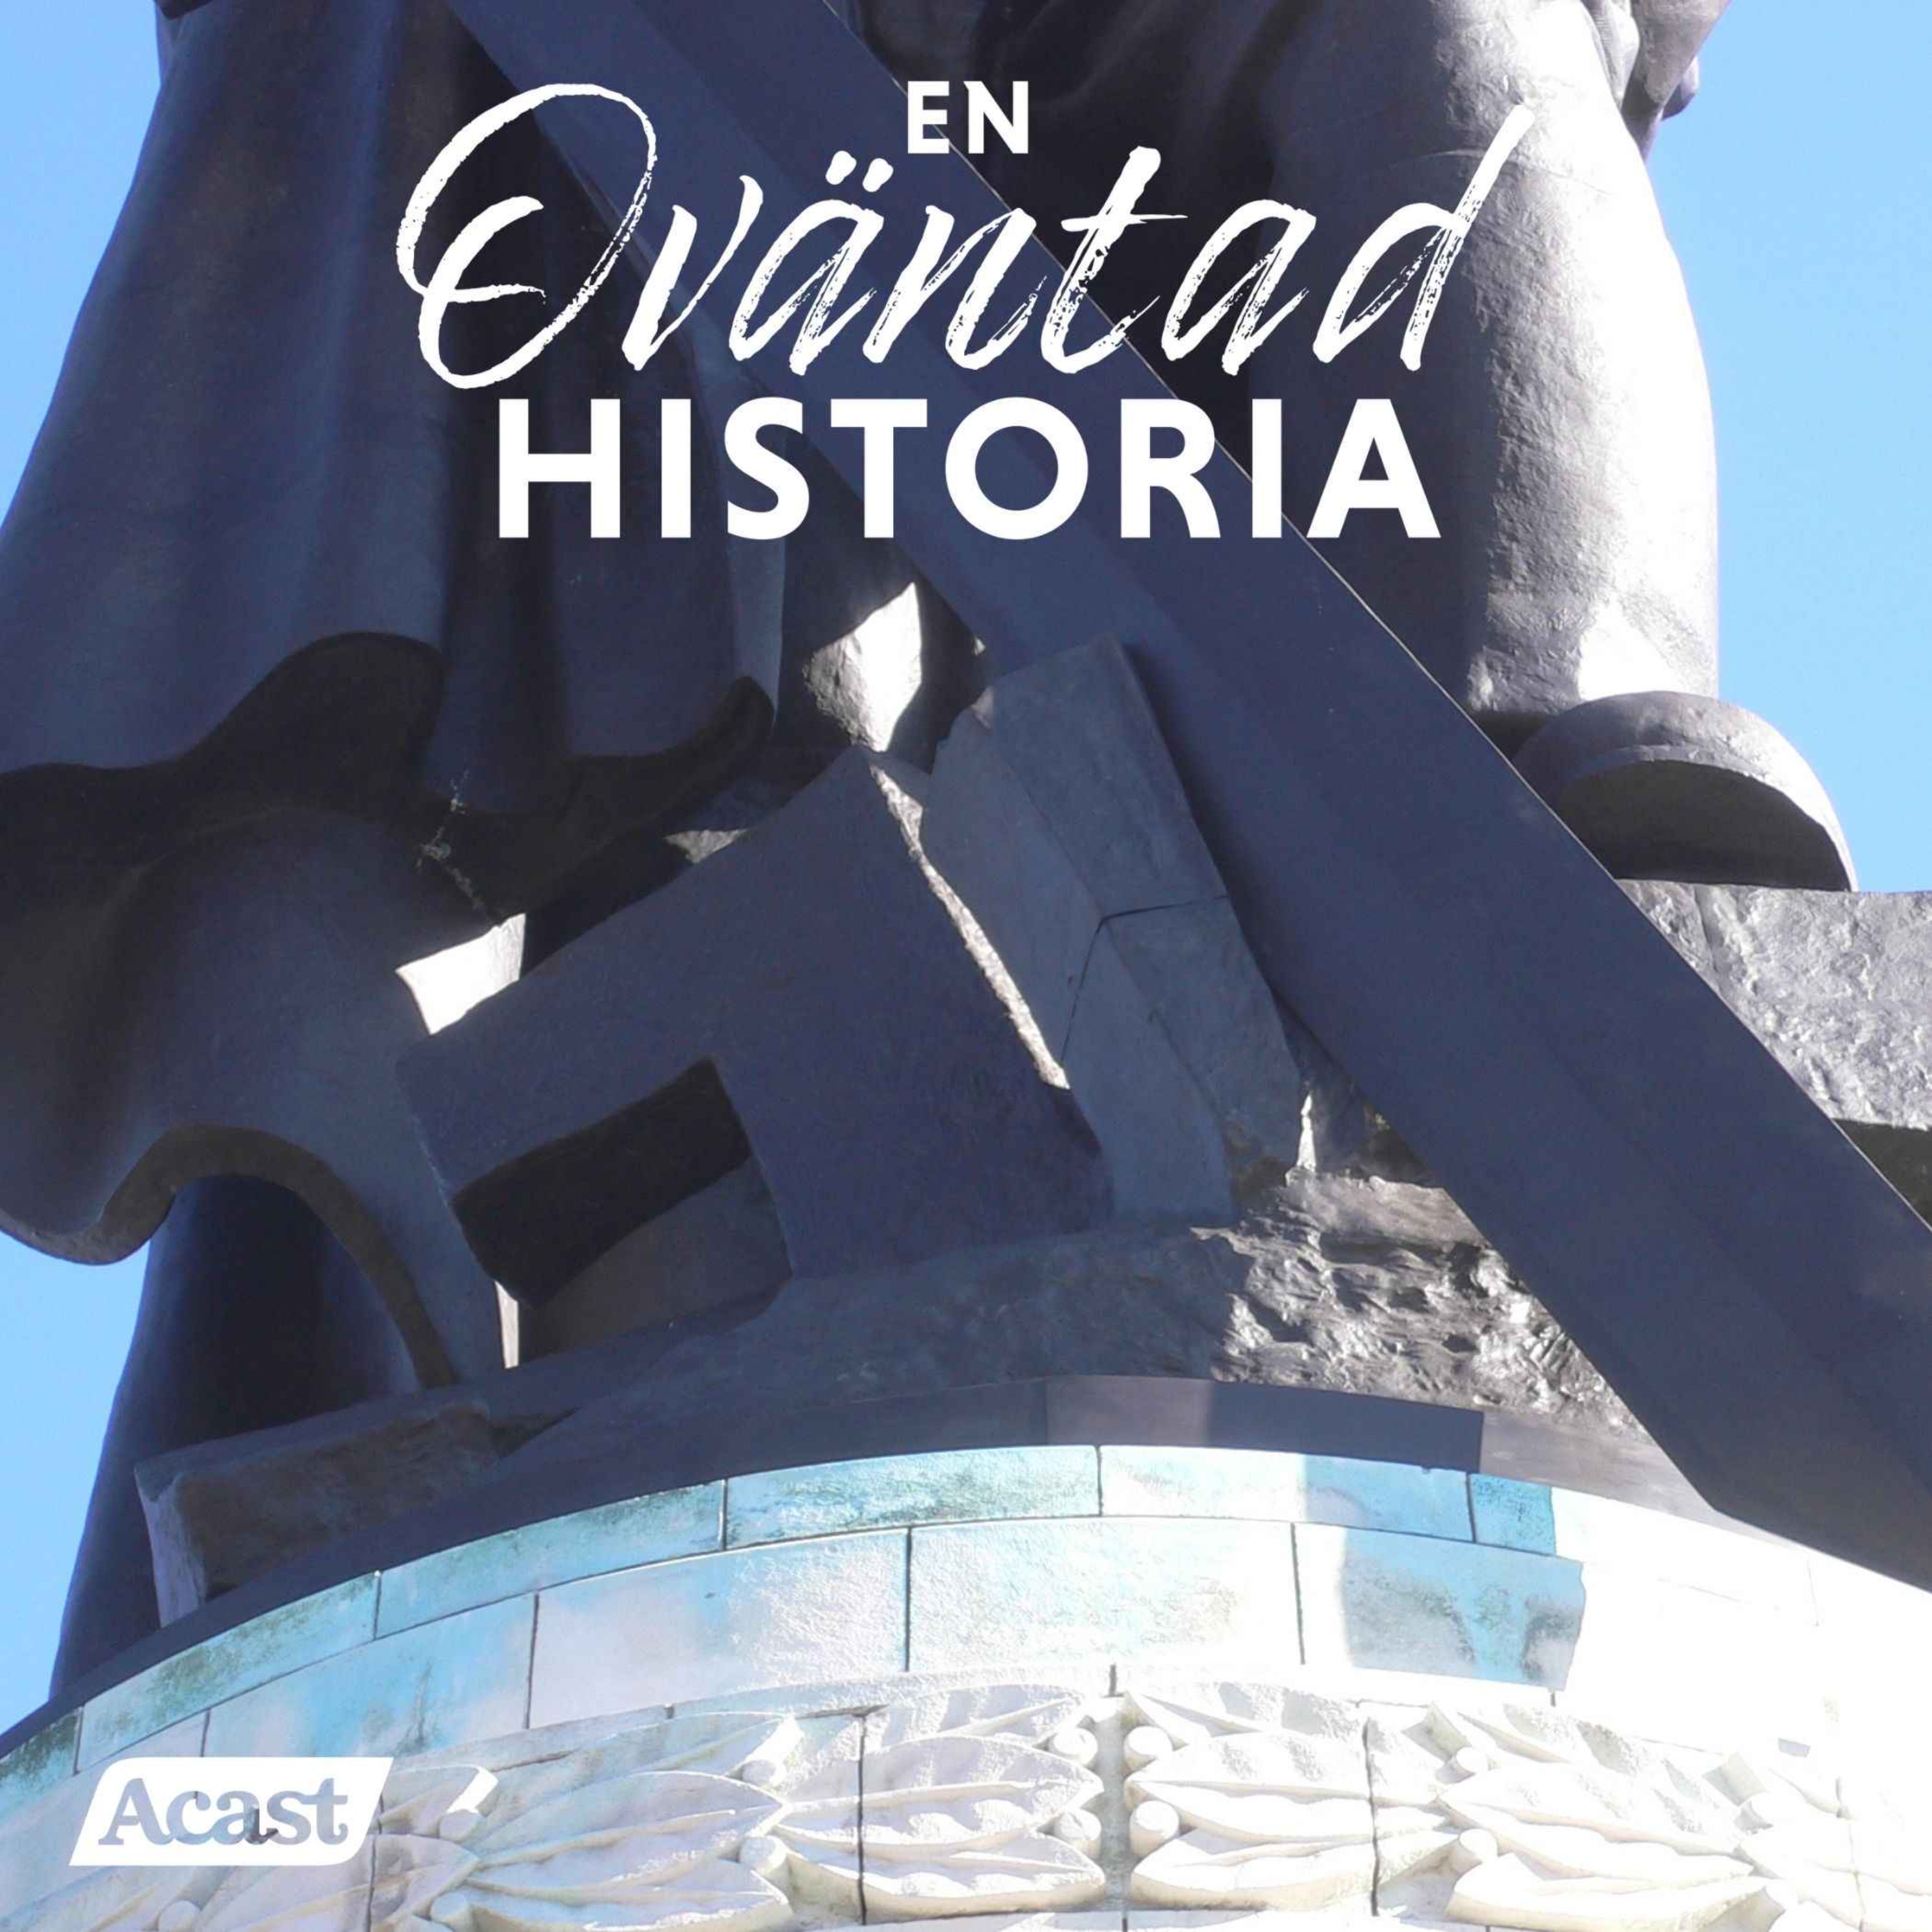 Monument och statyer – kampen om historien i det offentliga rummet